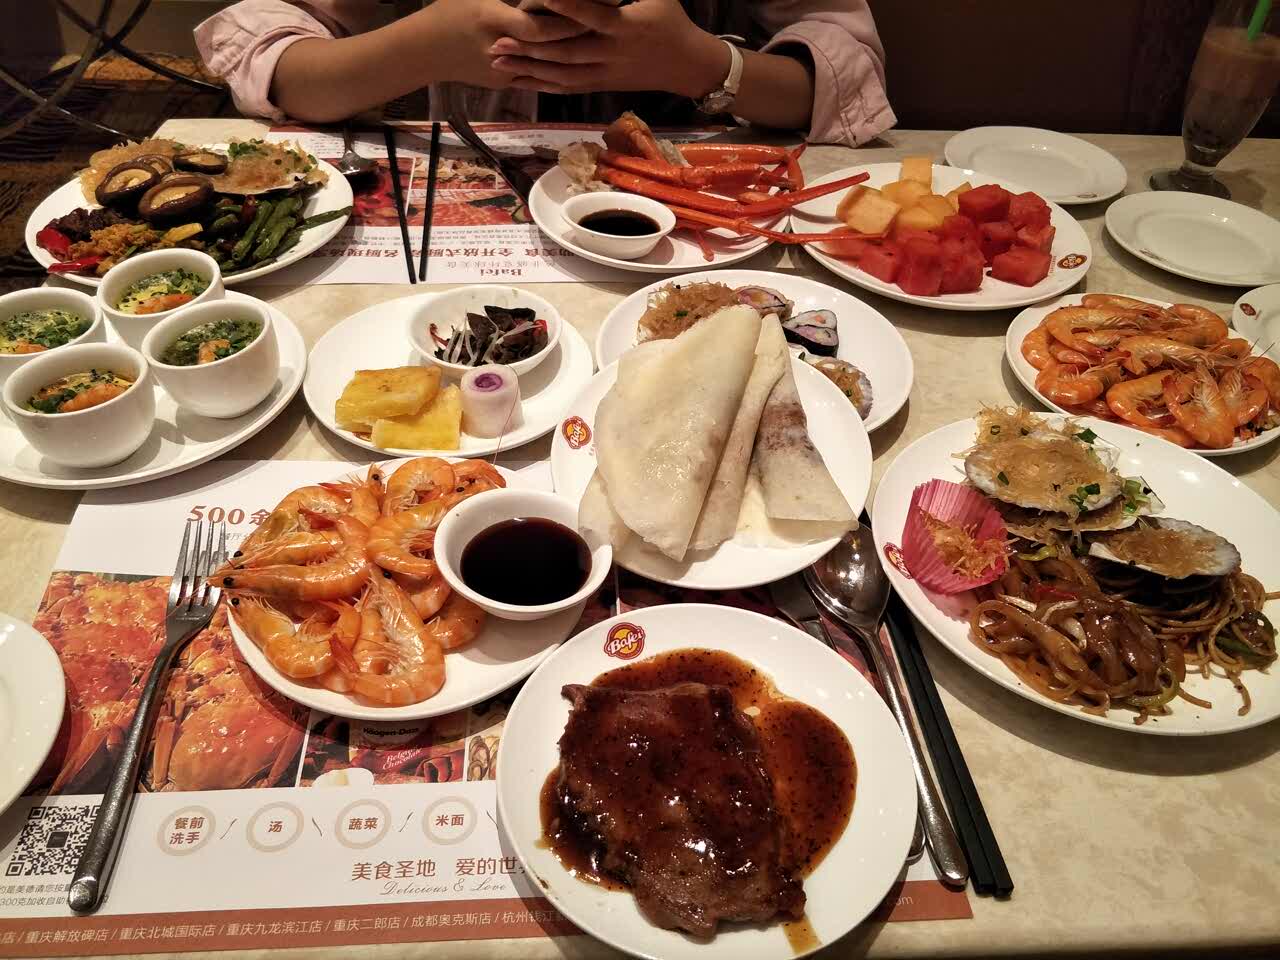 【携程美食林】重庆芭菲盛宴(袁家岗店)餐馆,菜品新鲜,种类丰富,味道